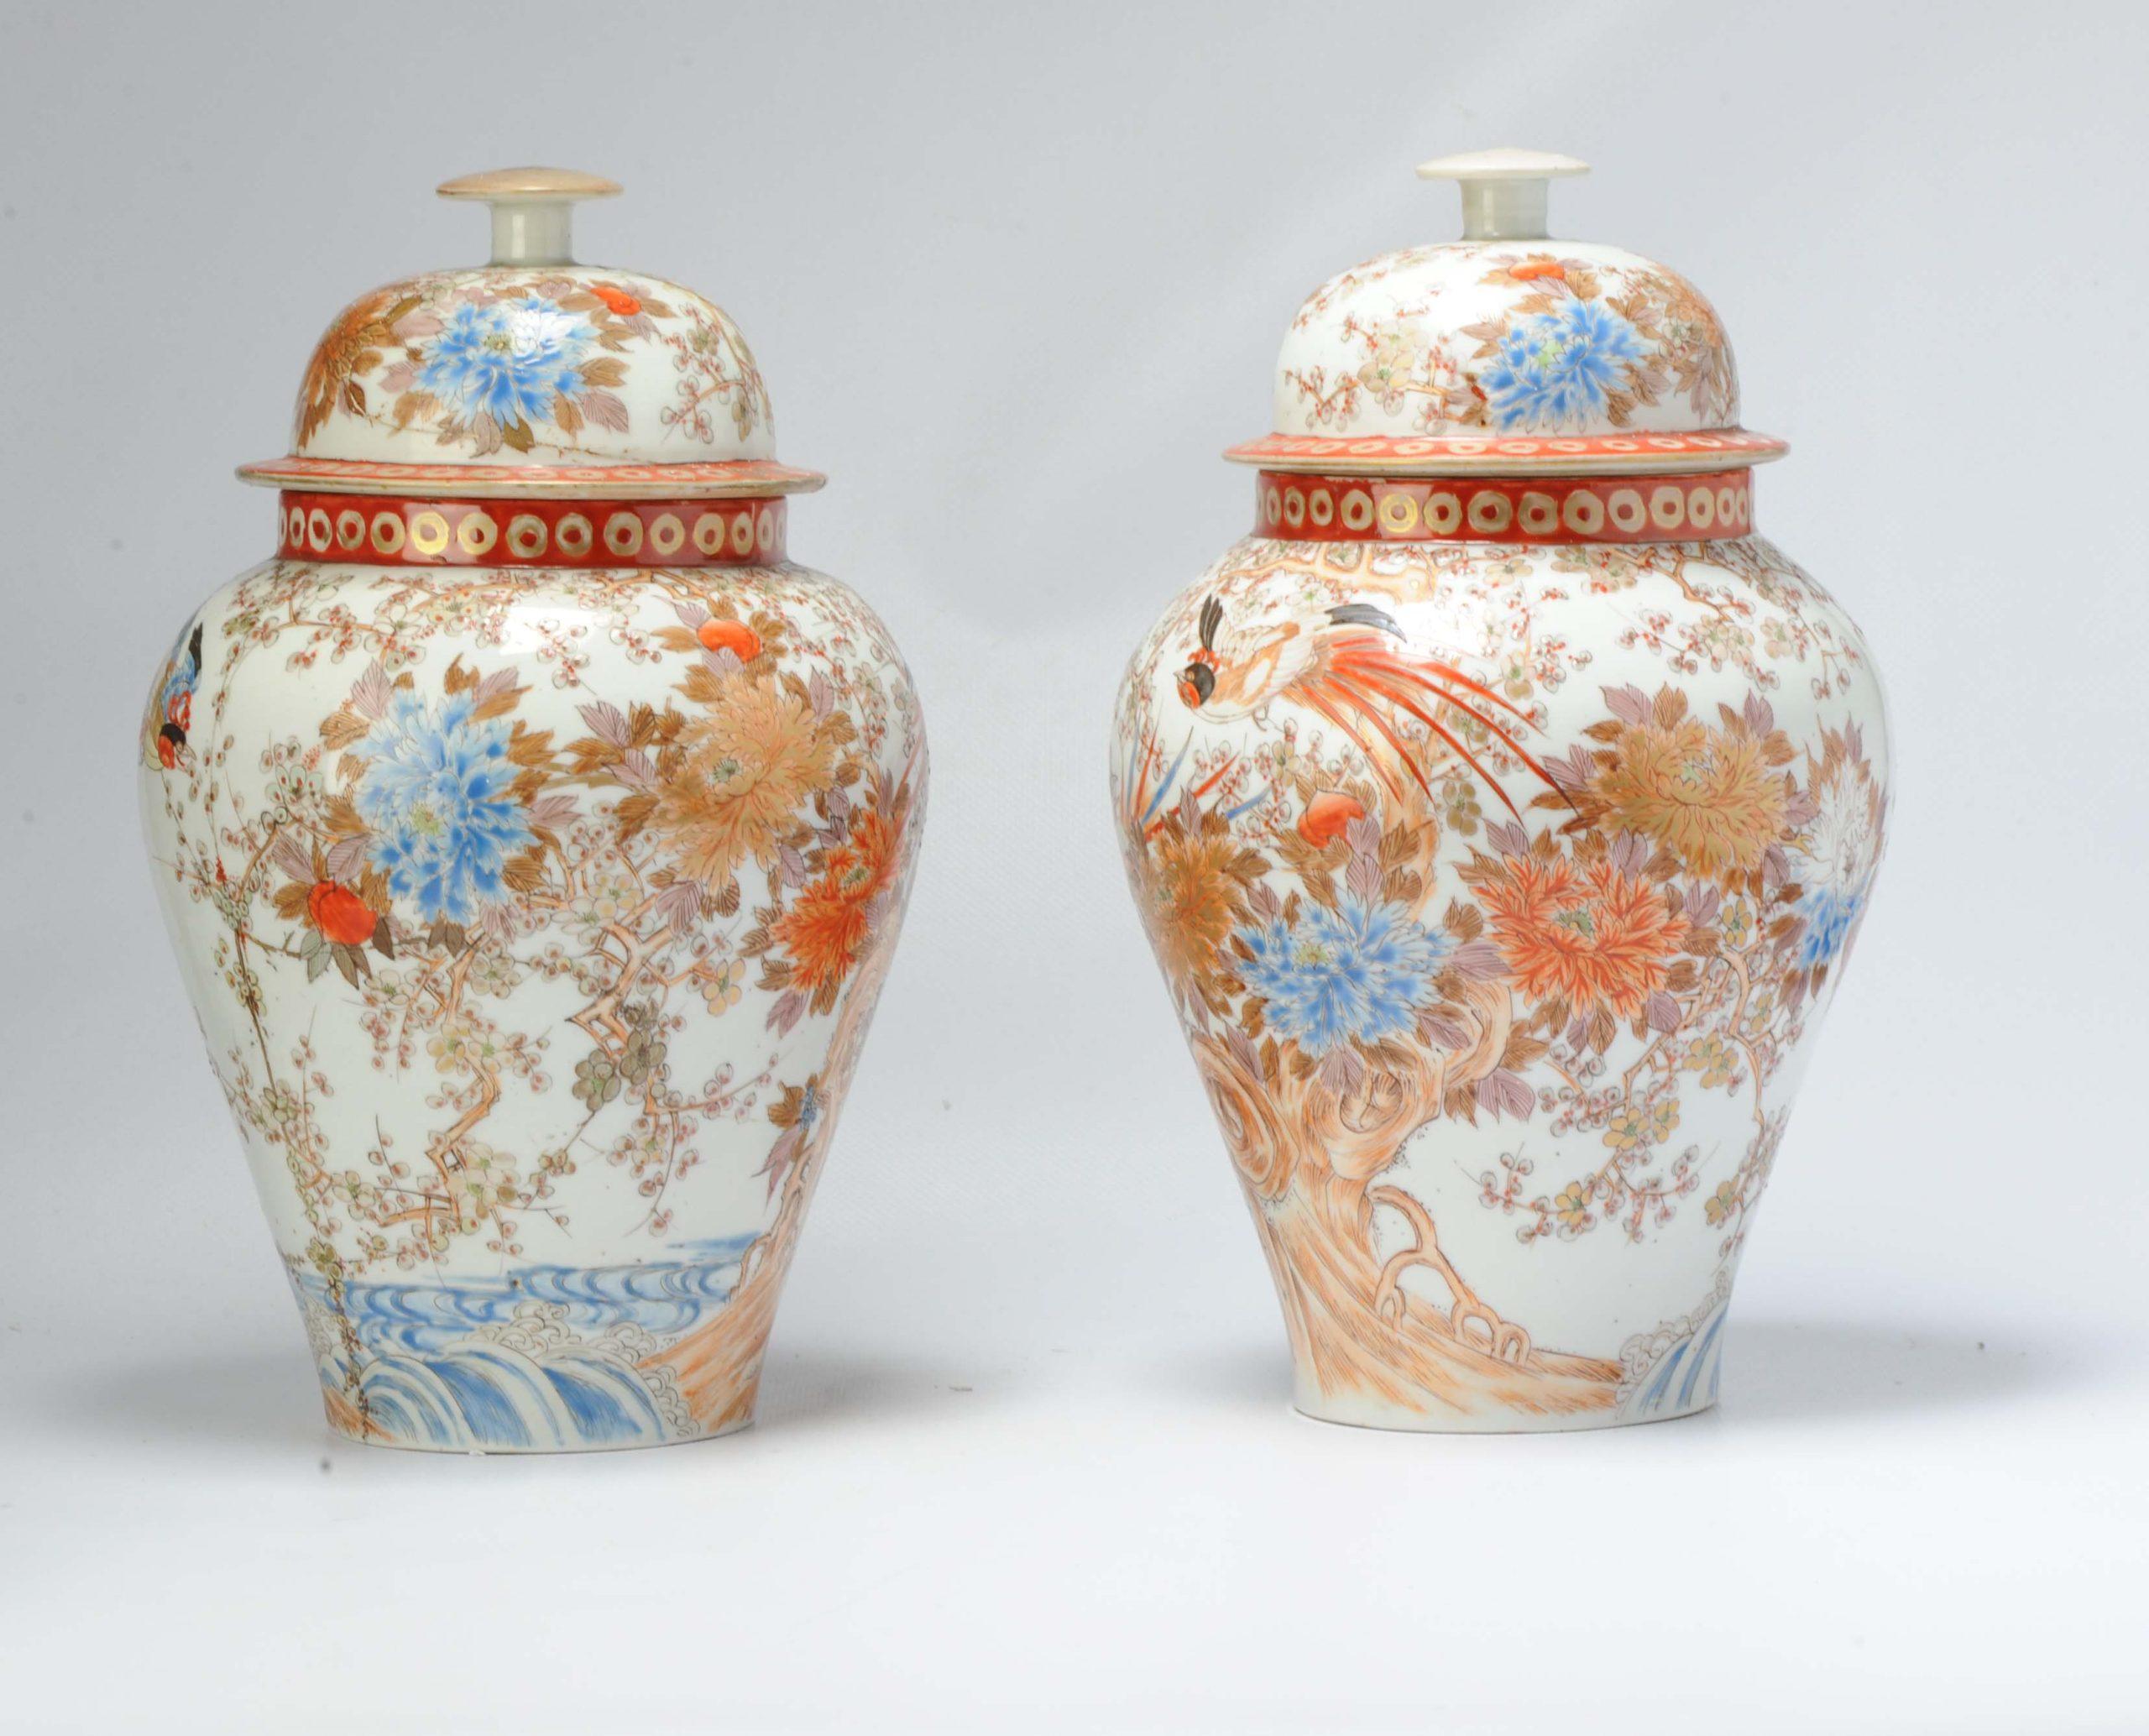 Superbe qualité Hichozan, ce joli vase à couvercle avec une scène continue d'oiseaux dans un paysage de jardin floral.

Marqué à la base.

Informations complémentaires :
MATERIAL : Porcelaine et poterie
Style japonais : Kutani
Région d'origine :